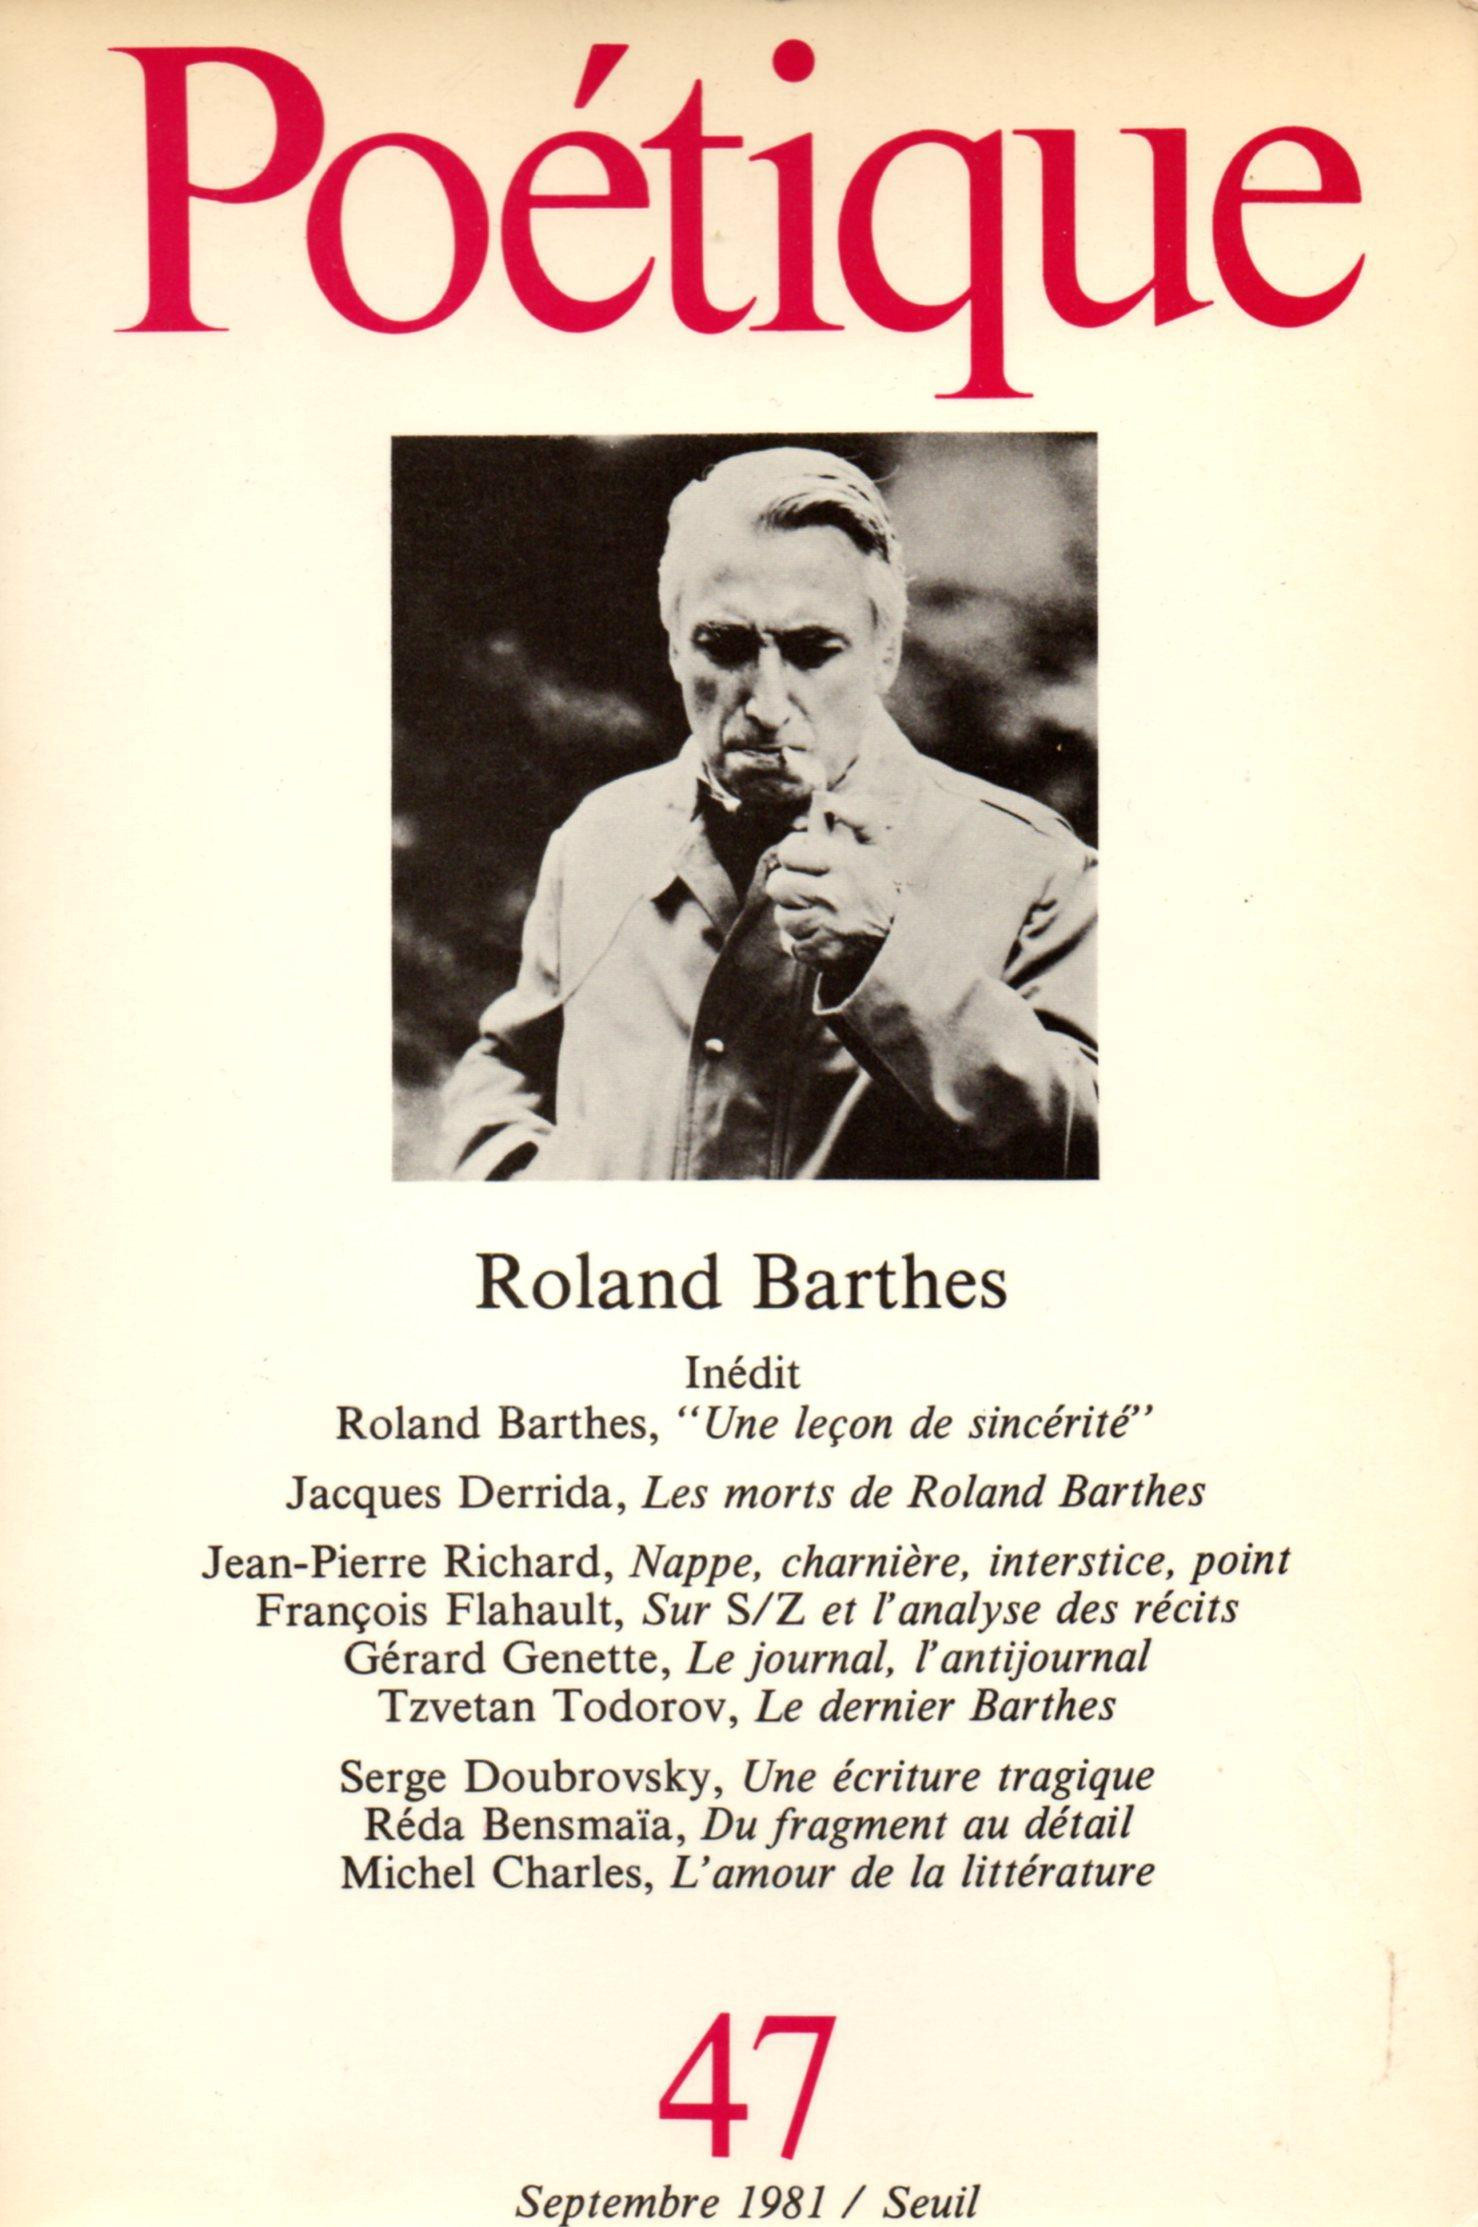 Ejemplar de la revista Poètique, fundada por Genette, Todorov y Cixous, dedicado a Roland Barthes /SEUIL